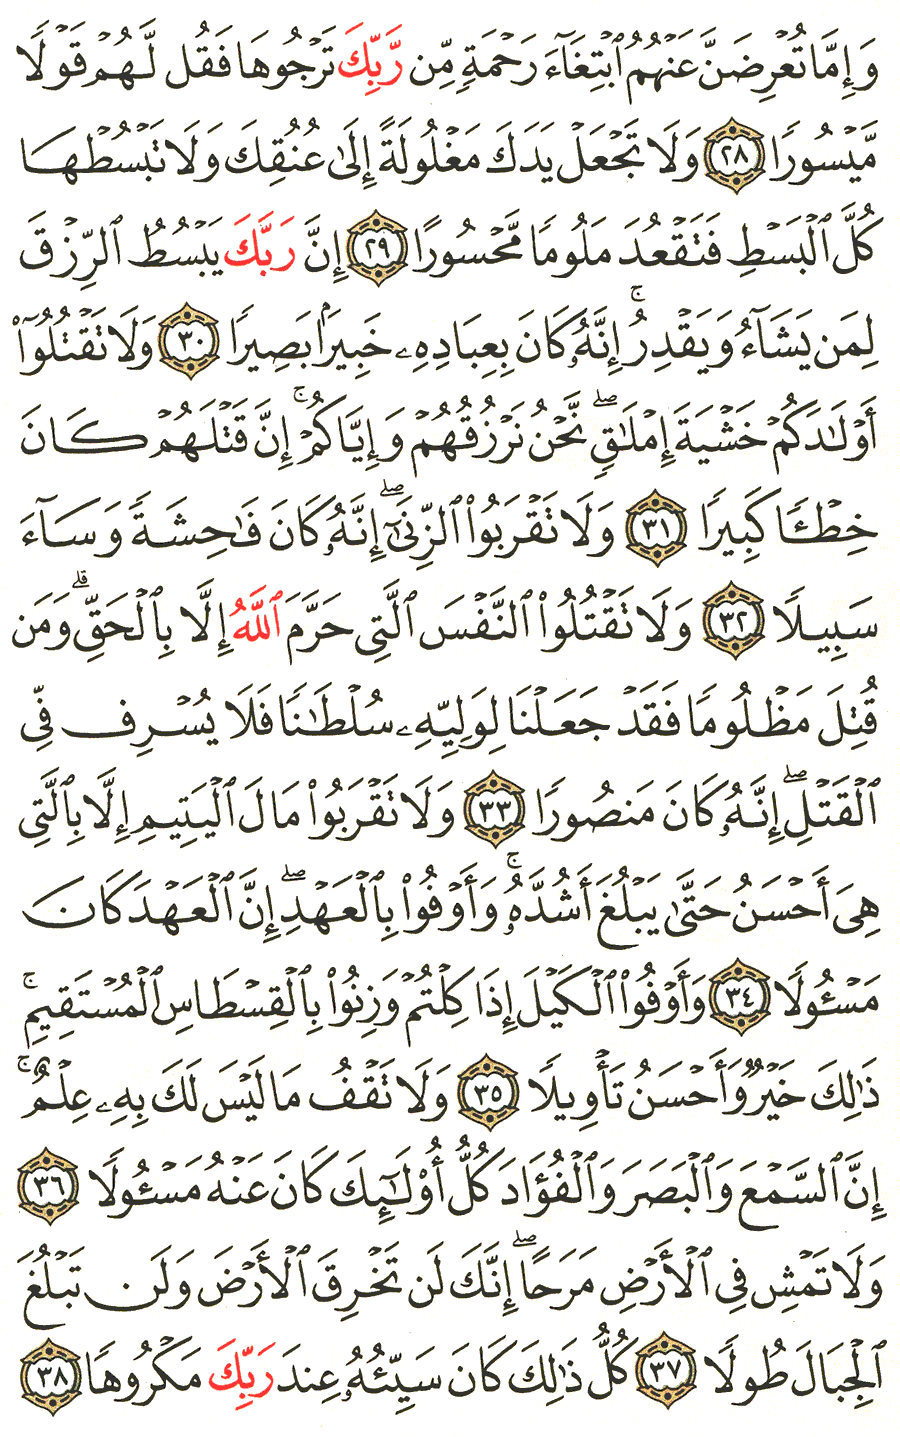 الصفحة 285 من القرآن الكريم